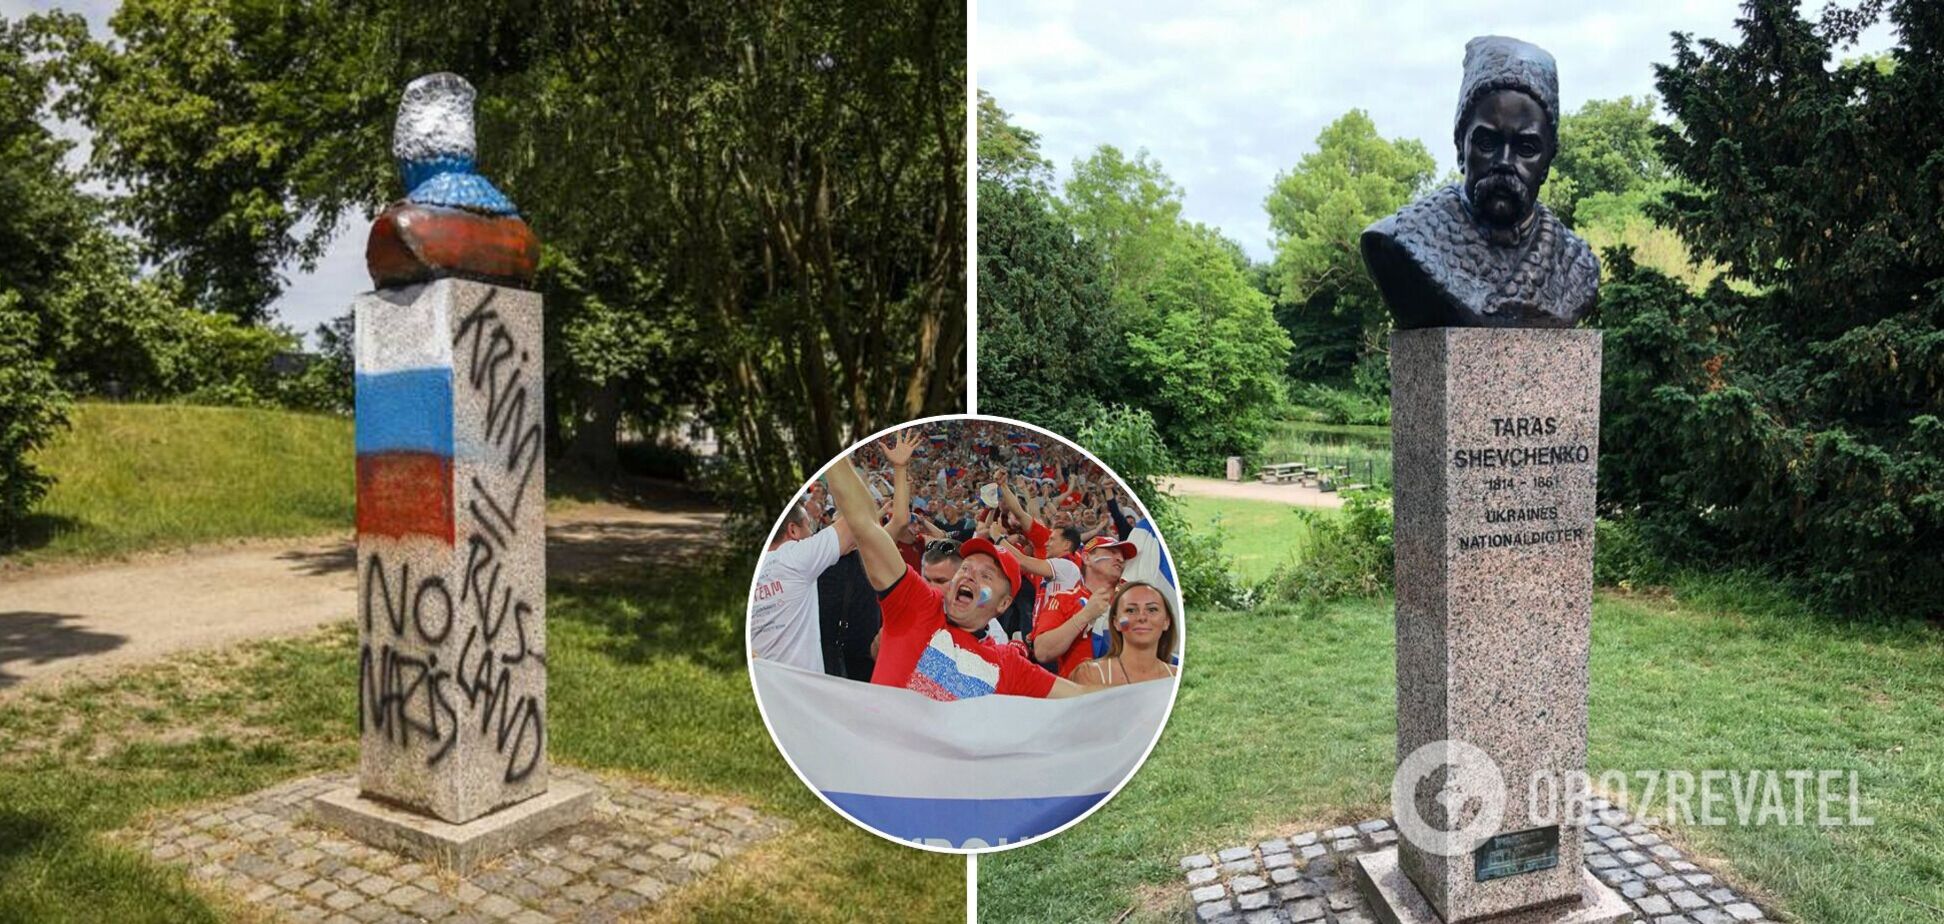 В Дании очистили оскверненный российскими фанатами памятник Кобзарю, поиски вандалов продолжаются